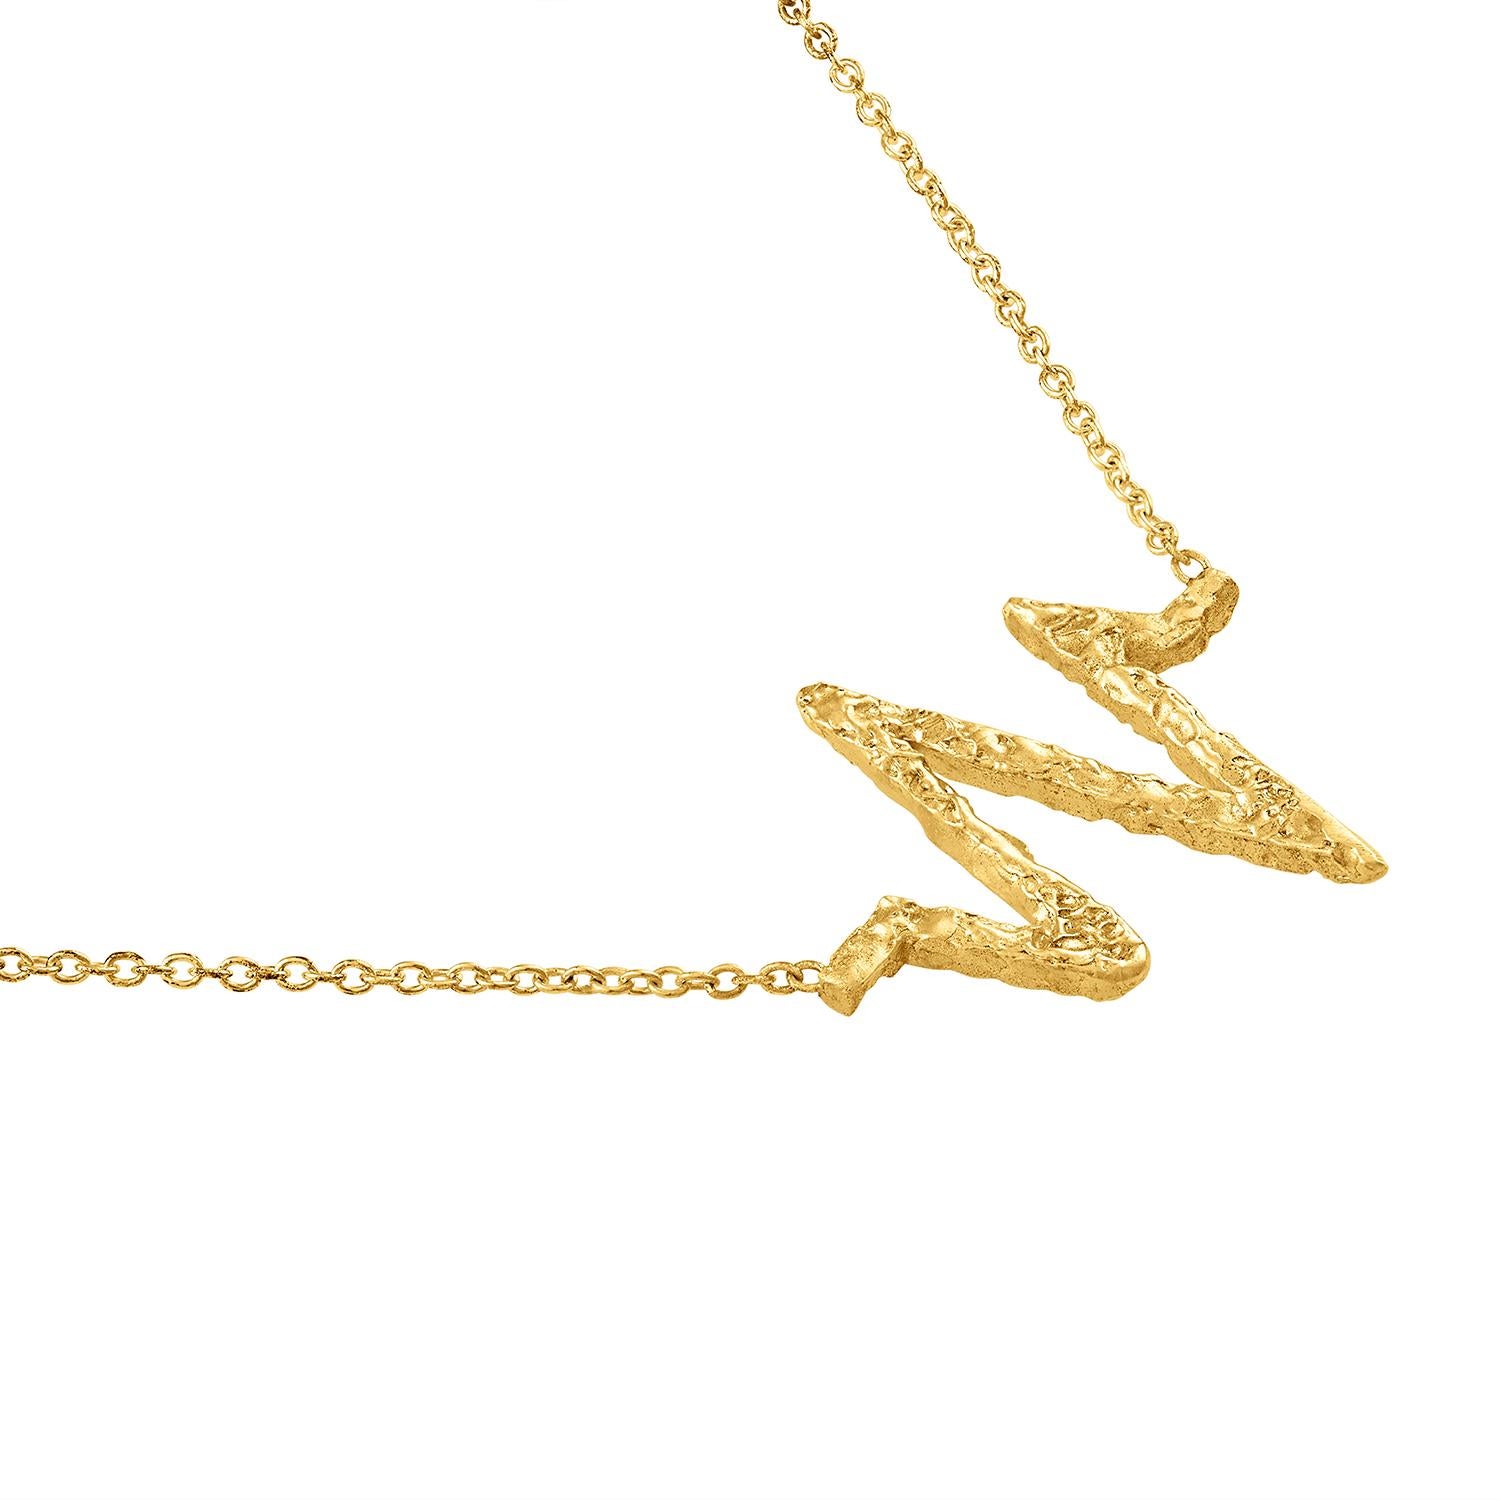 Lassen Sie sich vom Rhythmus des Universums mit dieser exquisiten Halskette aus 22-karätigem Gold mit dem fesselnden Frequenzsymbol inspirieren. Dieser zarte Anhänger, der mit der Wärme des reinen Goldes schimmert, ist eine ständige Erinnerung